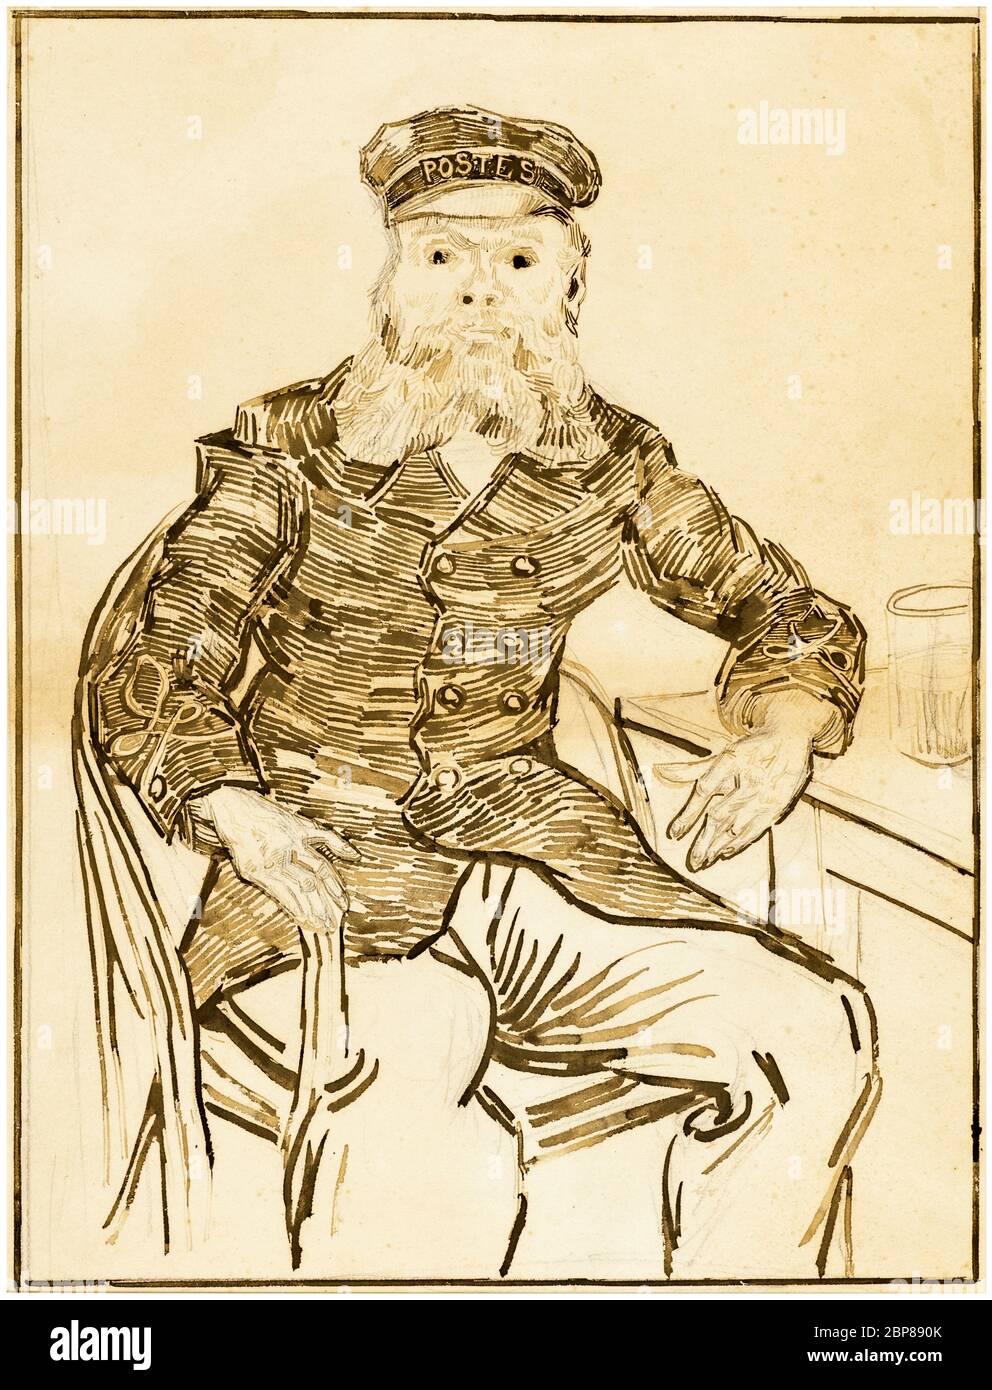 Vincent Van Gogh, el Postman: Joseph Roulin, dibujo de retrato, 1888 Foto de stock